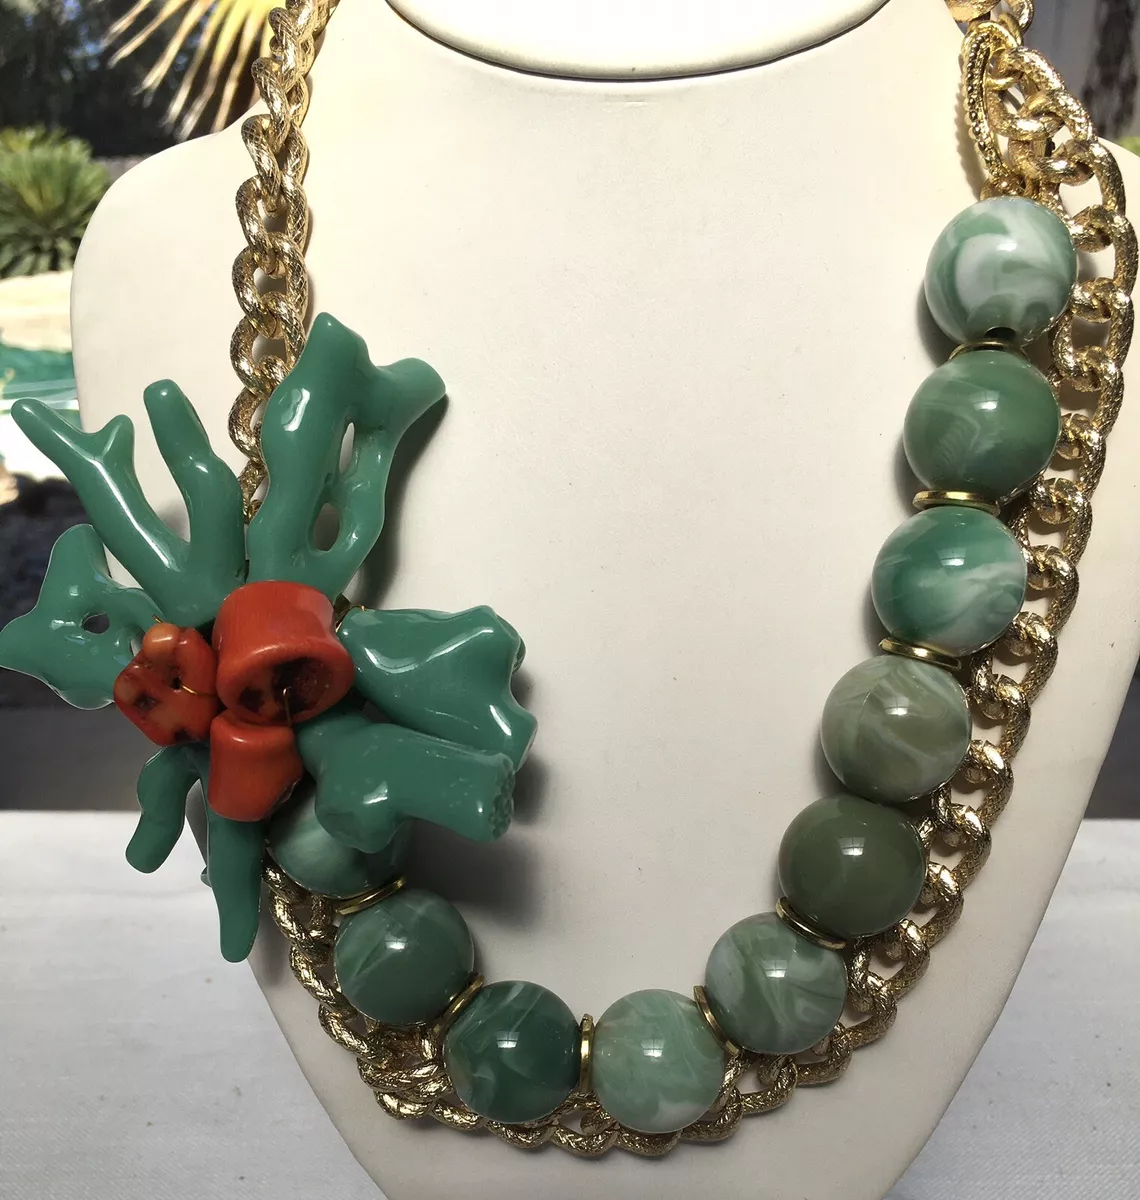 Green Fat Pearl Bead Chunky Jewelry Necklace Set Shiny | eBay